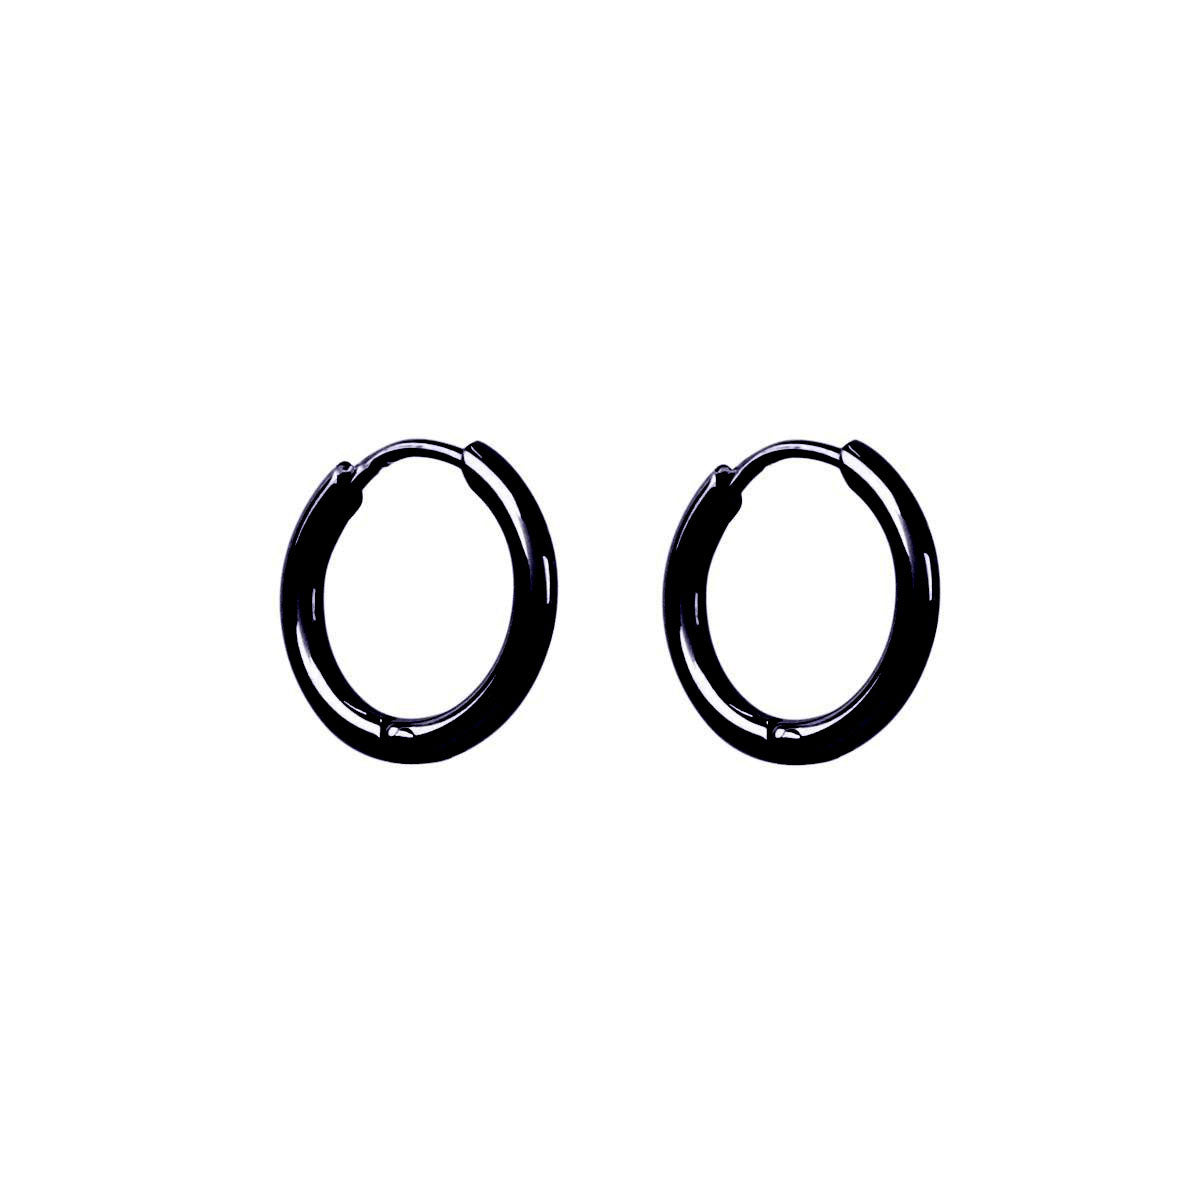 Small steel ring earrings 8mm